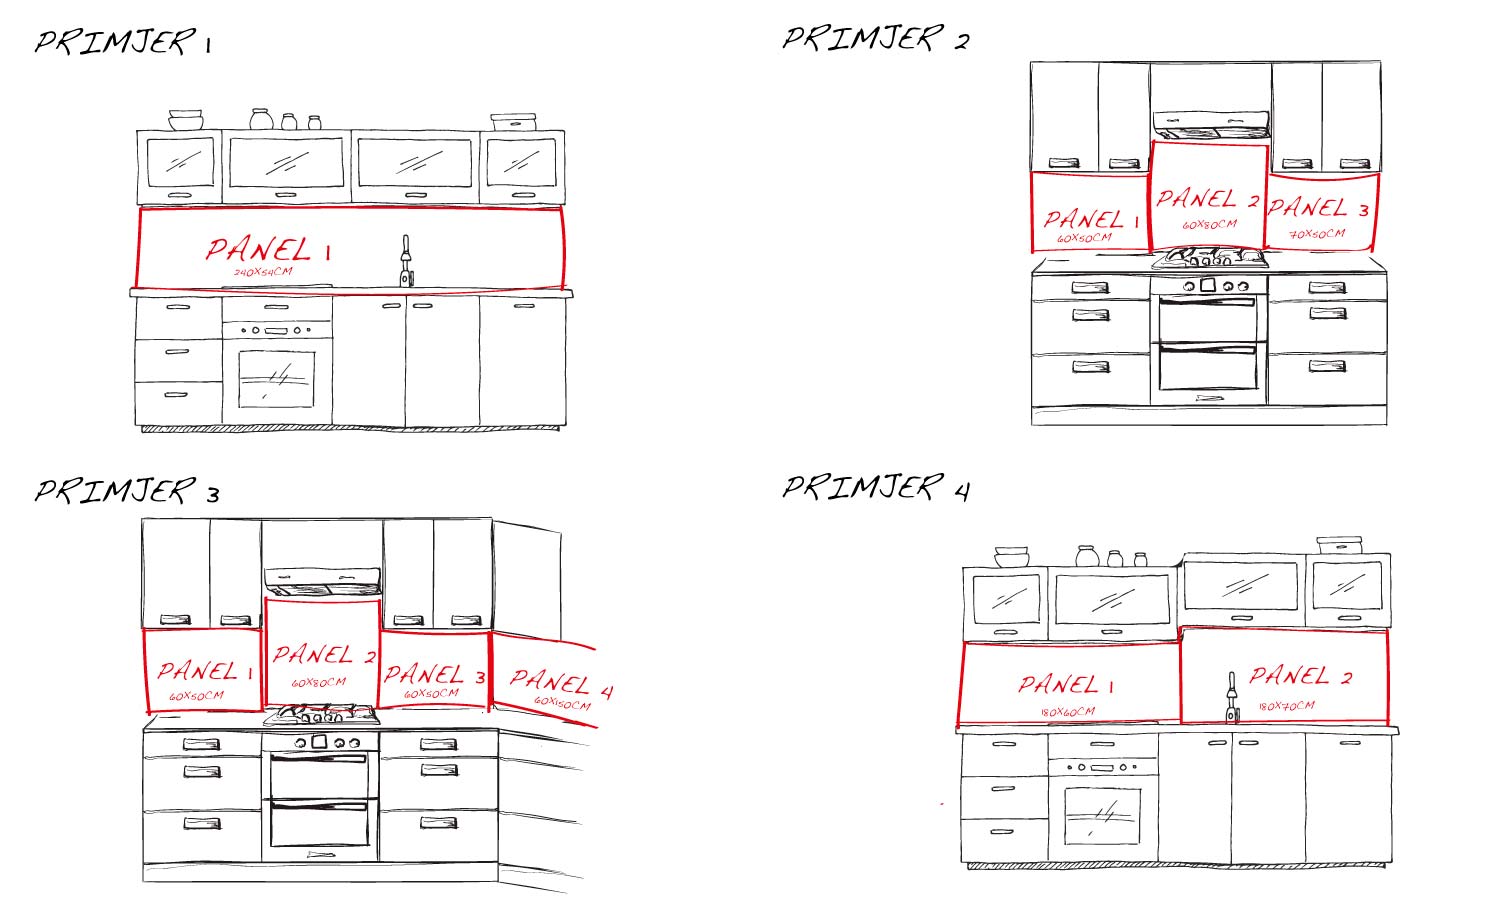 Paneli za kuhinje Spices in spoons  -  Stakleni / PVC ploče / Pleksiglas -  sa printom za kuhinju, Zidne obloge PKU183